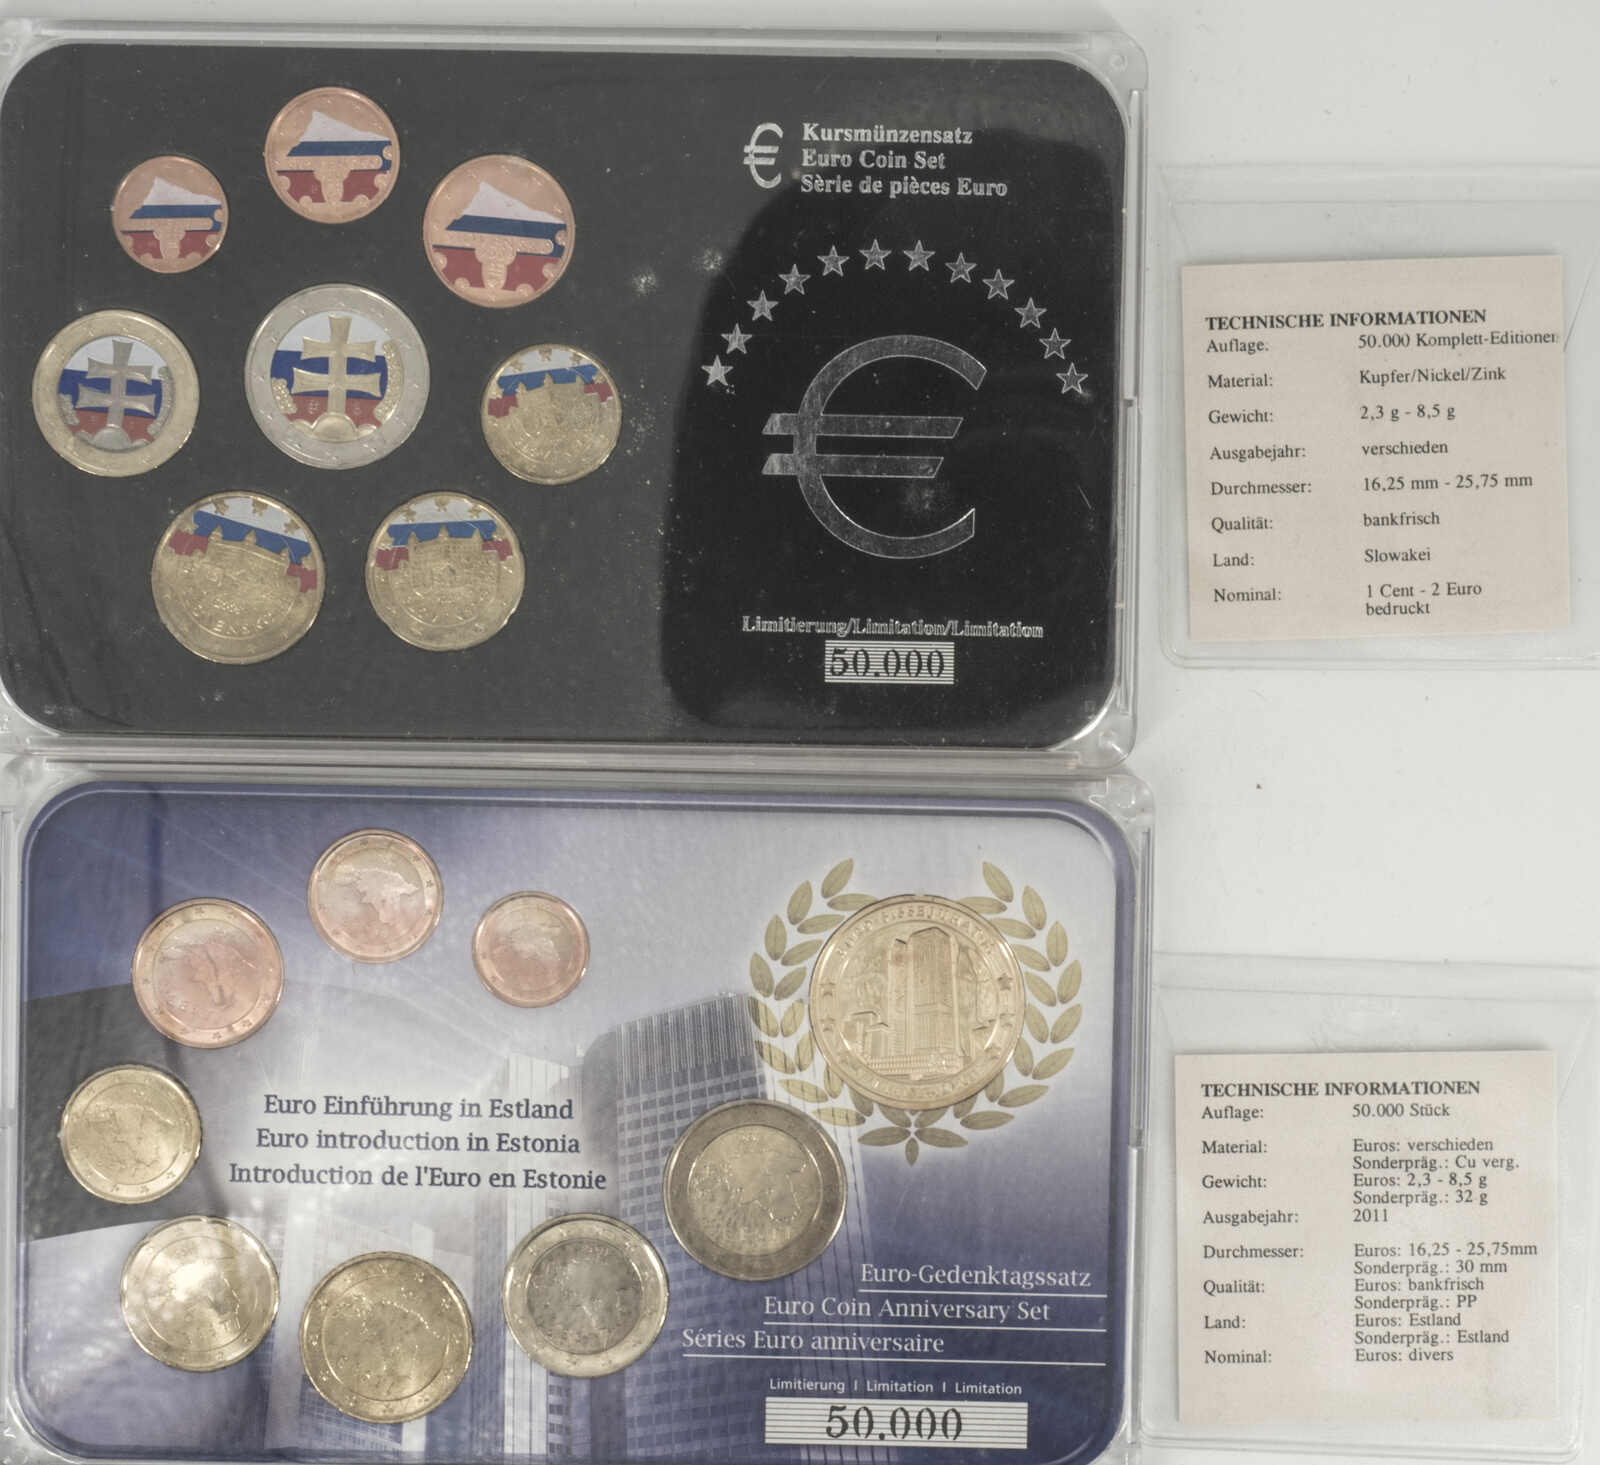 40.480.10.10: Europe - Slovaquie - pièces en euro - Münzsätze